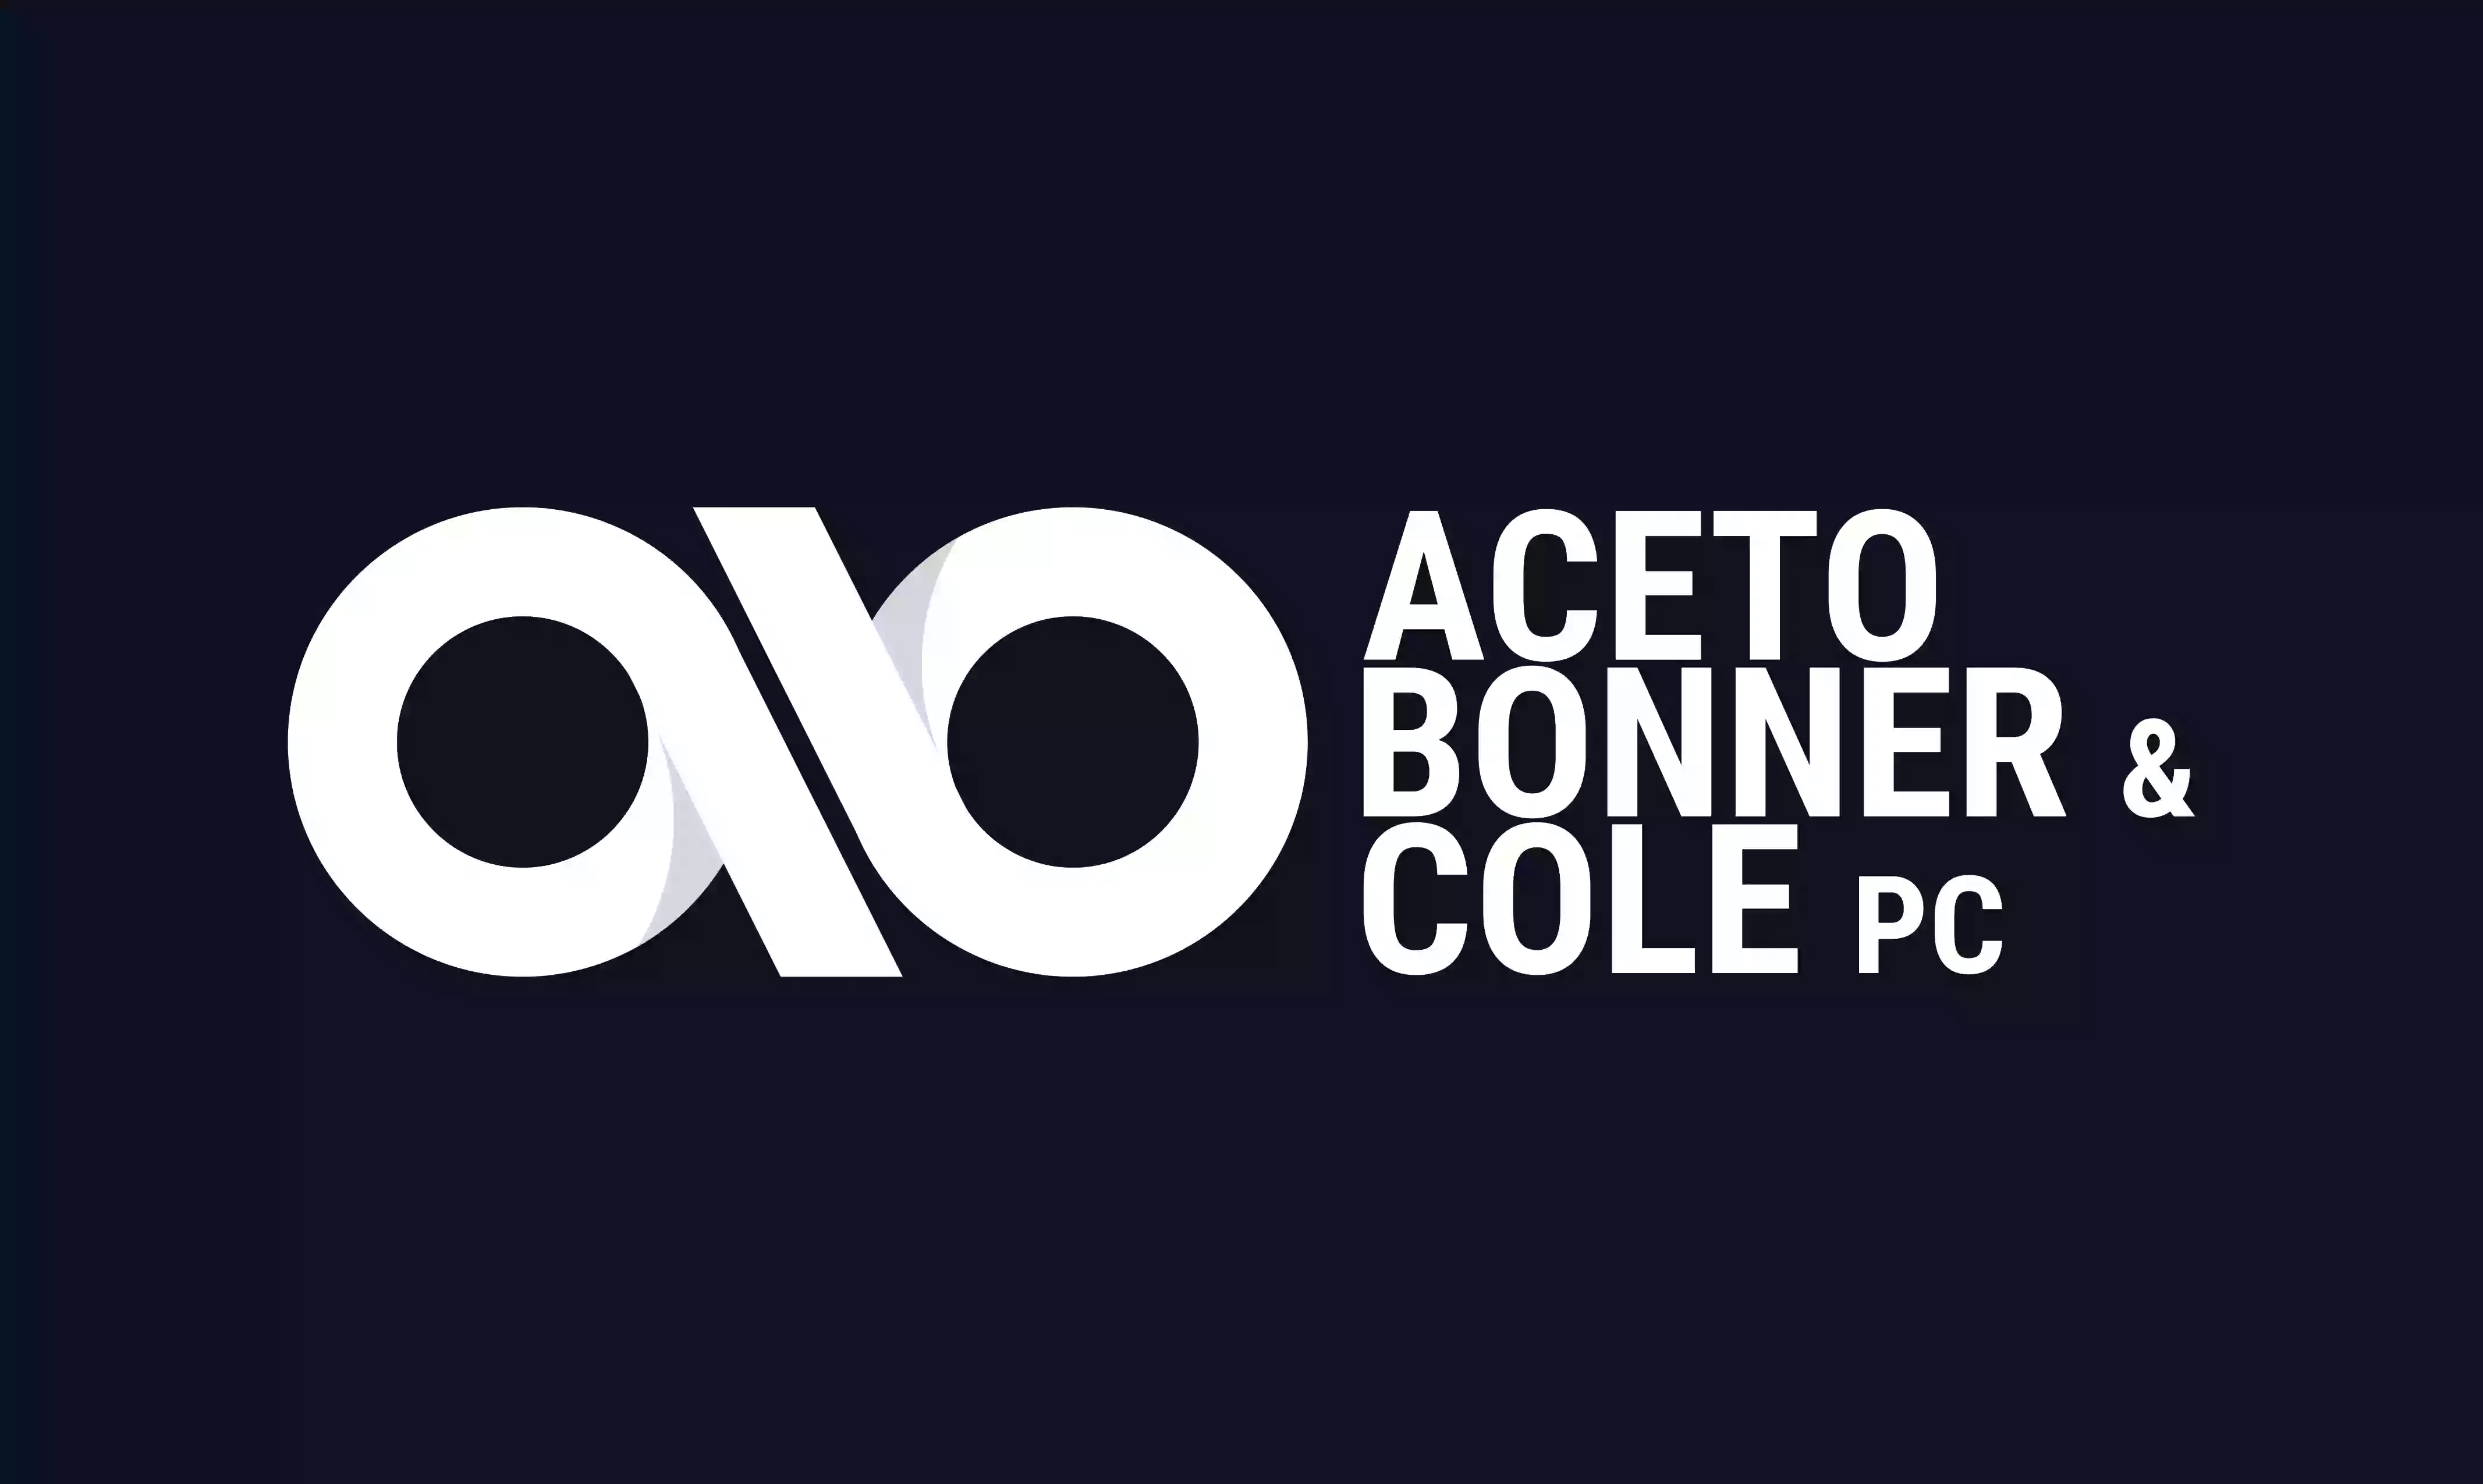 Aceto, Bonner & Cole, PC